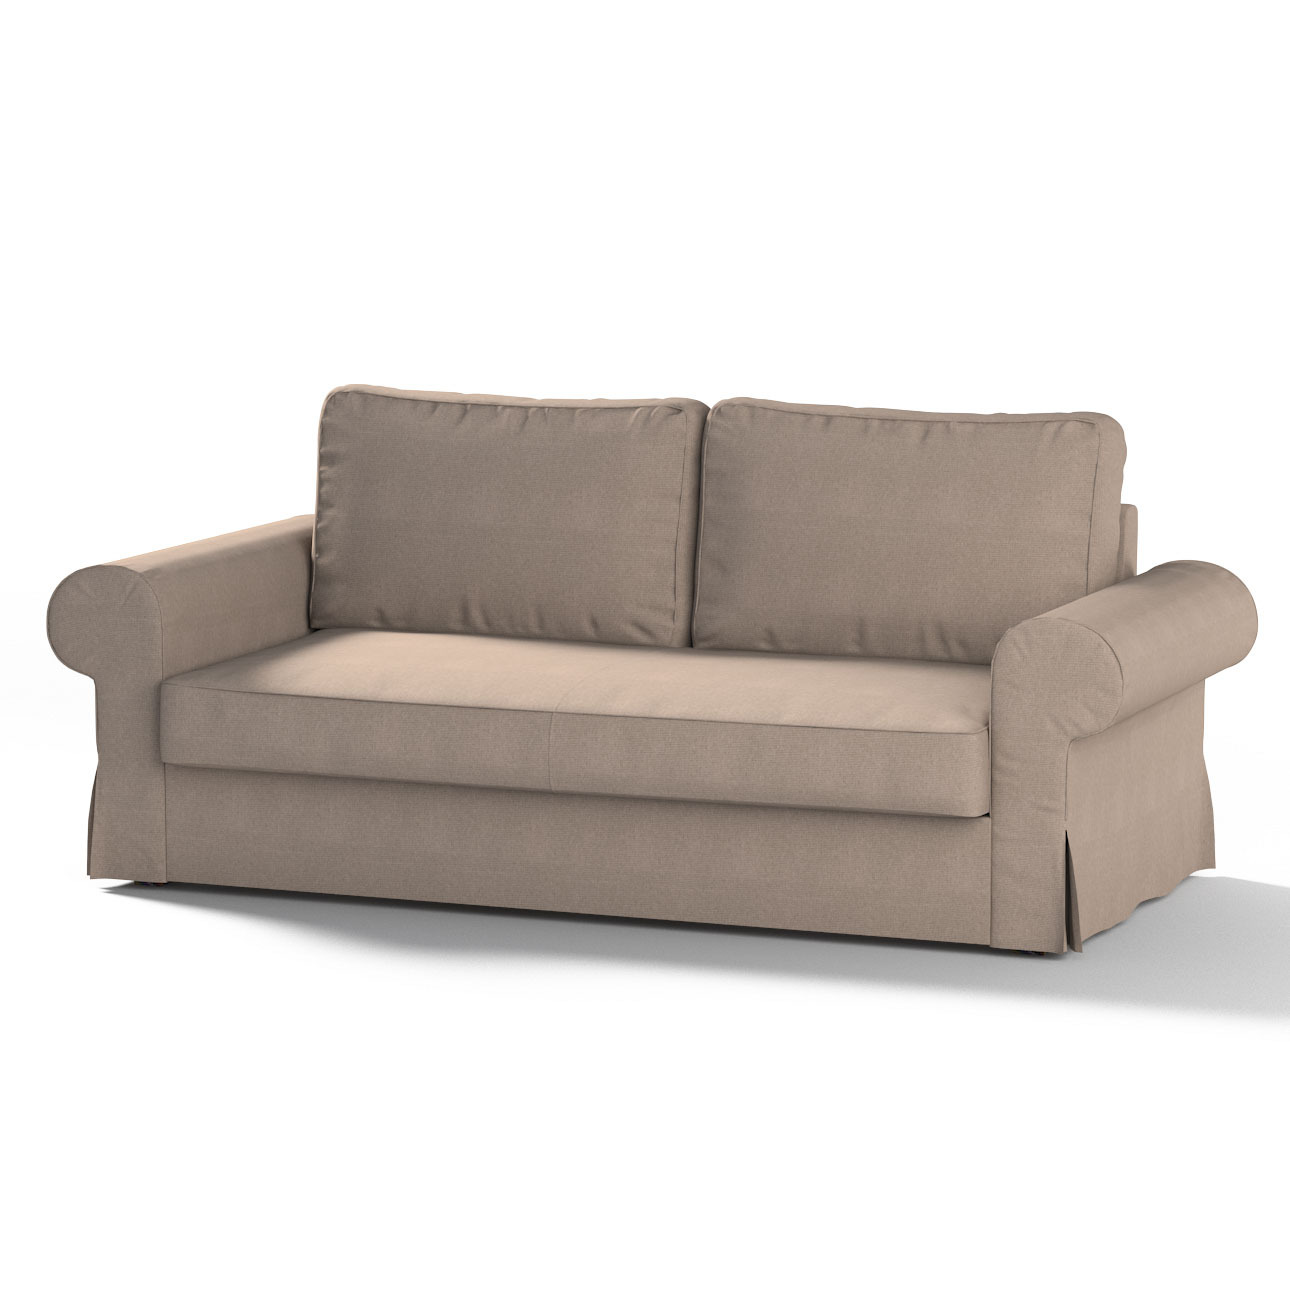 Bezug für Backabro 3-Sitzer Sofa ausklappbar, beige-grau, Bezug für Backabr günstig online kaufen